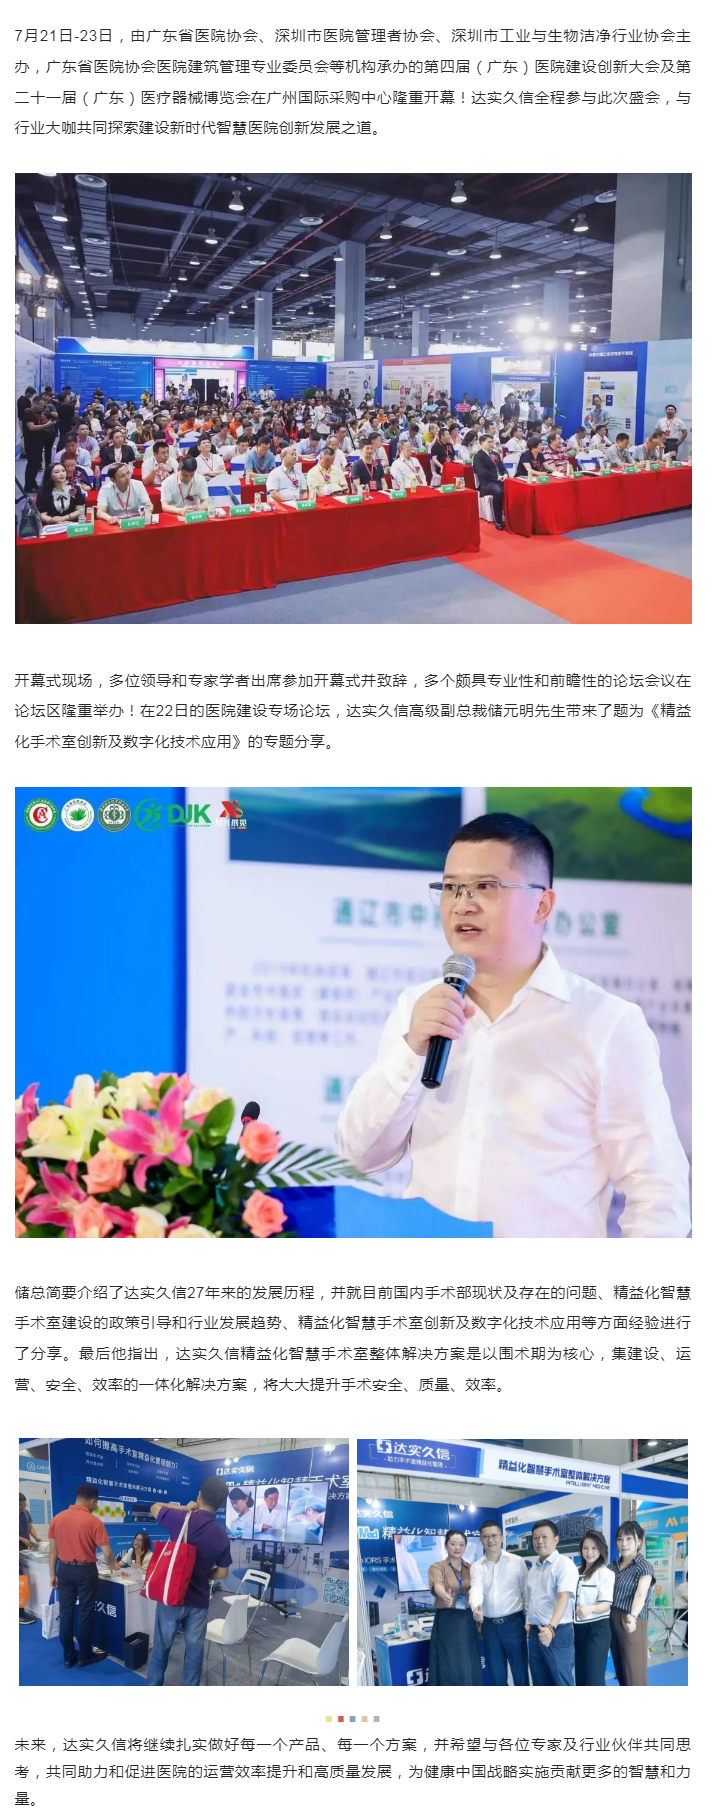 会议报道 _ 第四届广东省医院建设创新大会盛大举行1.png